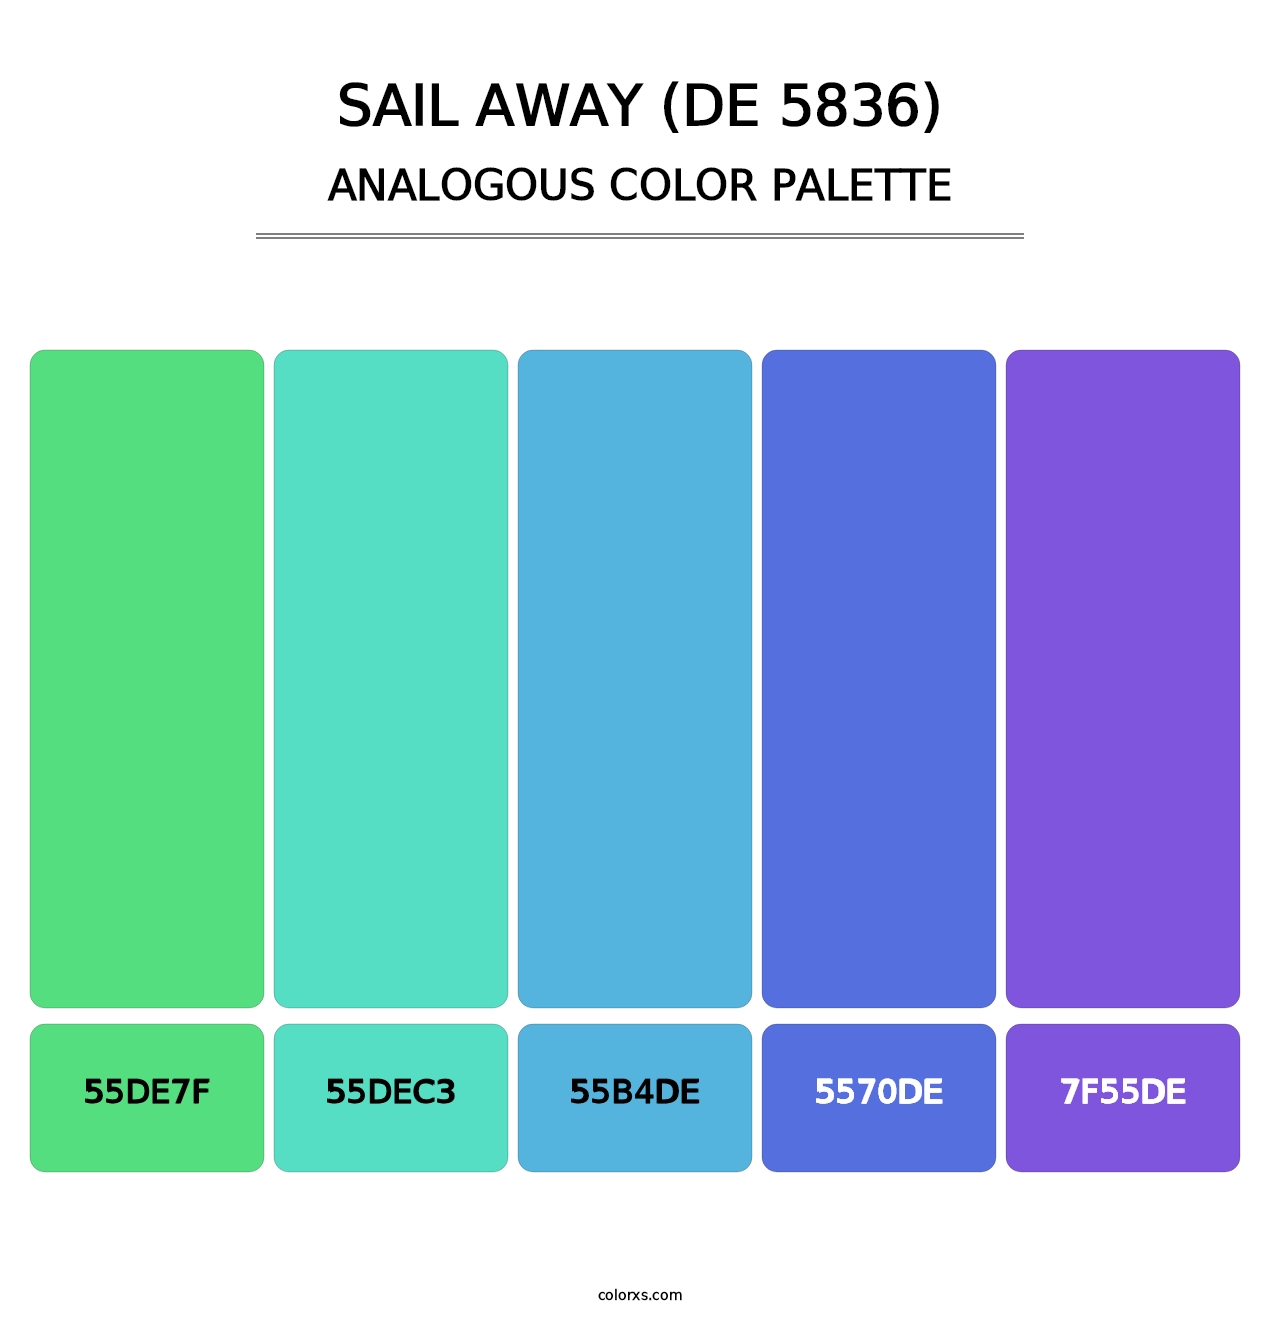 Sail Away (DE 5836) - Analogous Color Palette